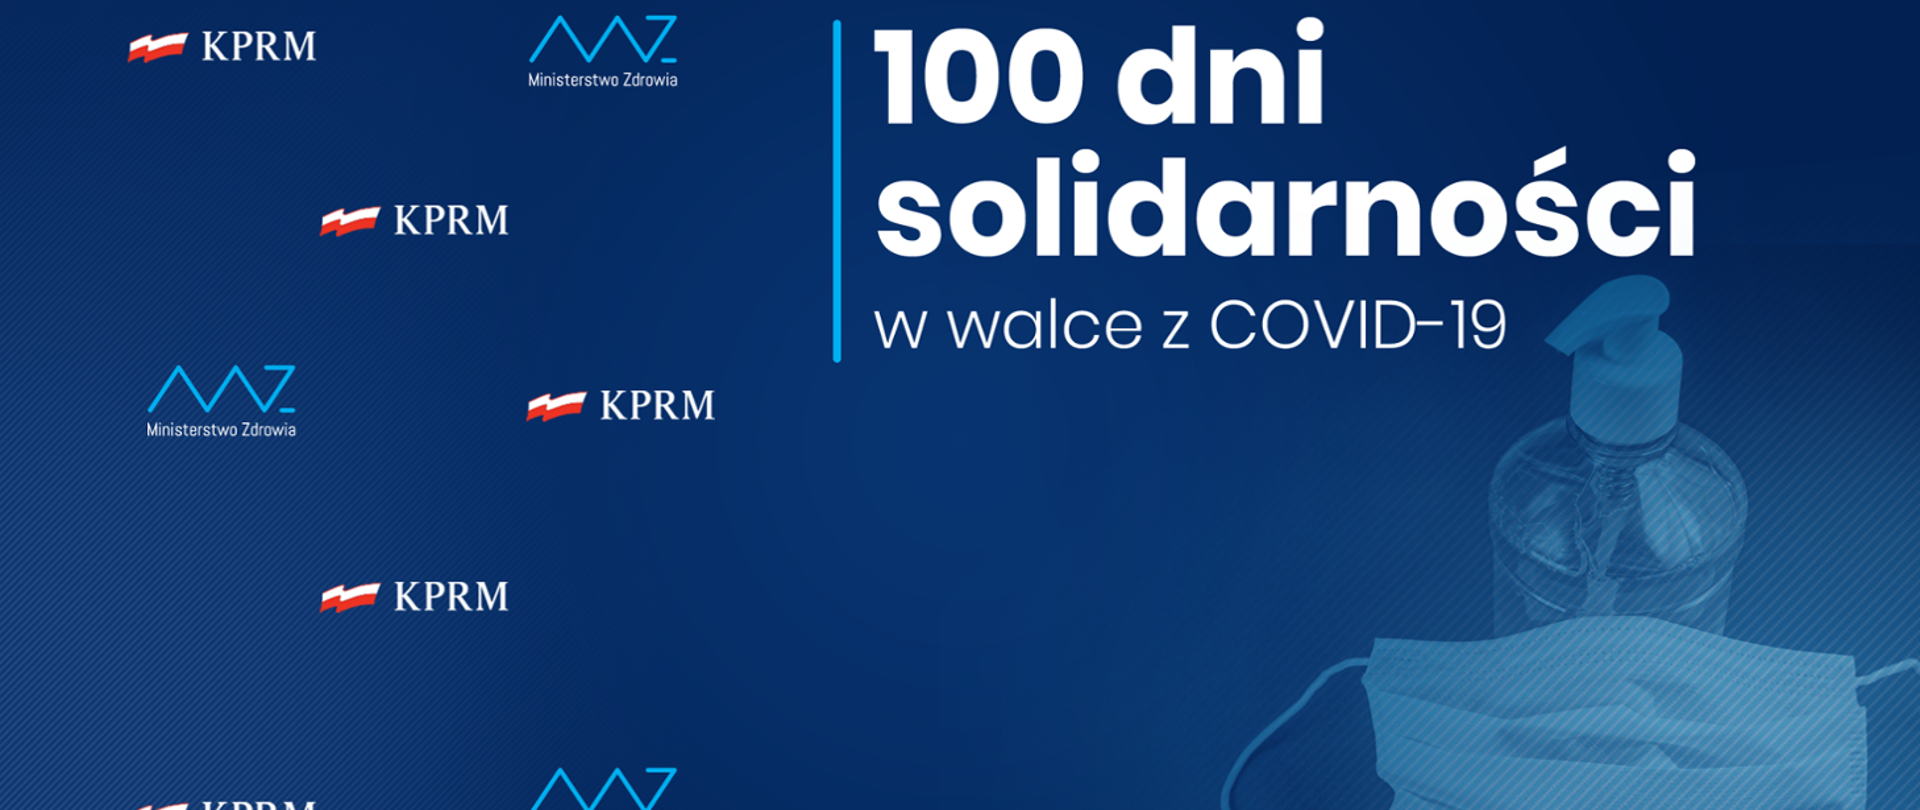 Grafika z napisem: 100 dni solidarności w walce z COVID - 19